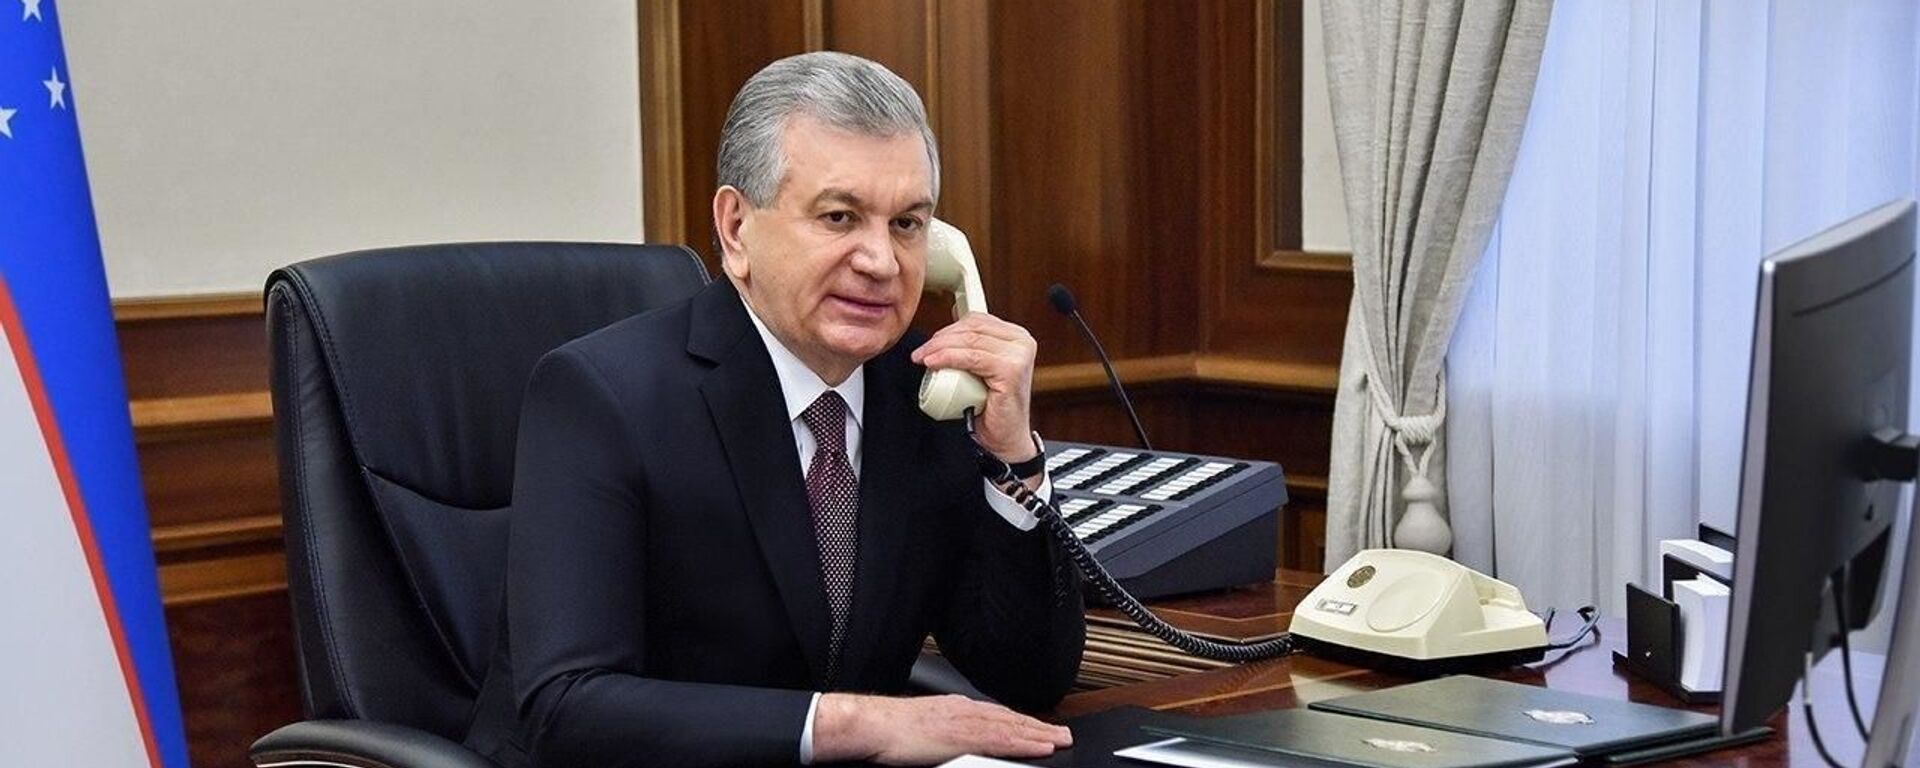 Президент Шавкат Мирзиёев разговаривает по телефону - Sputnik Узбекистан, 1920, 13.05.2021